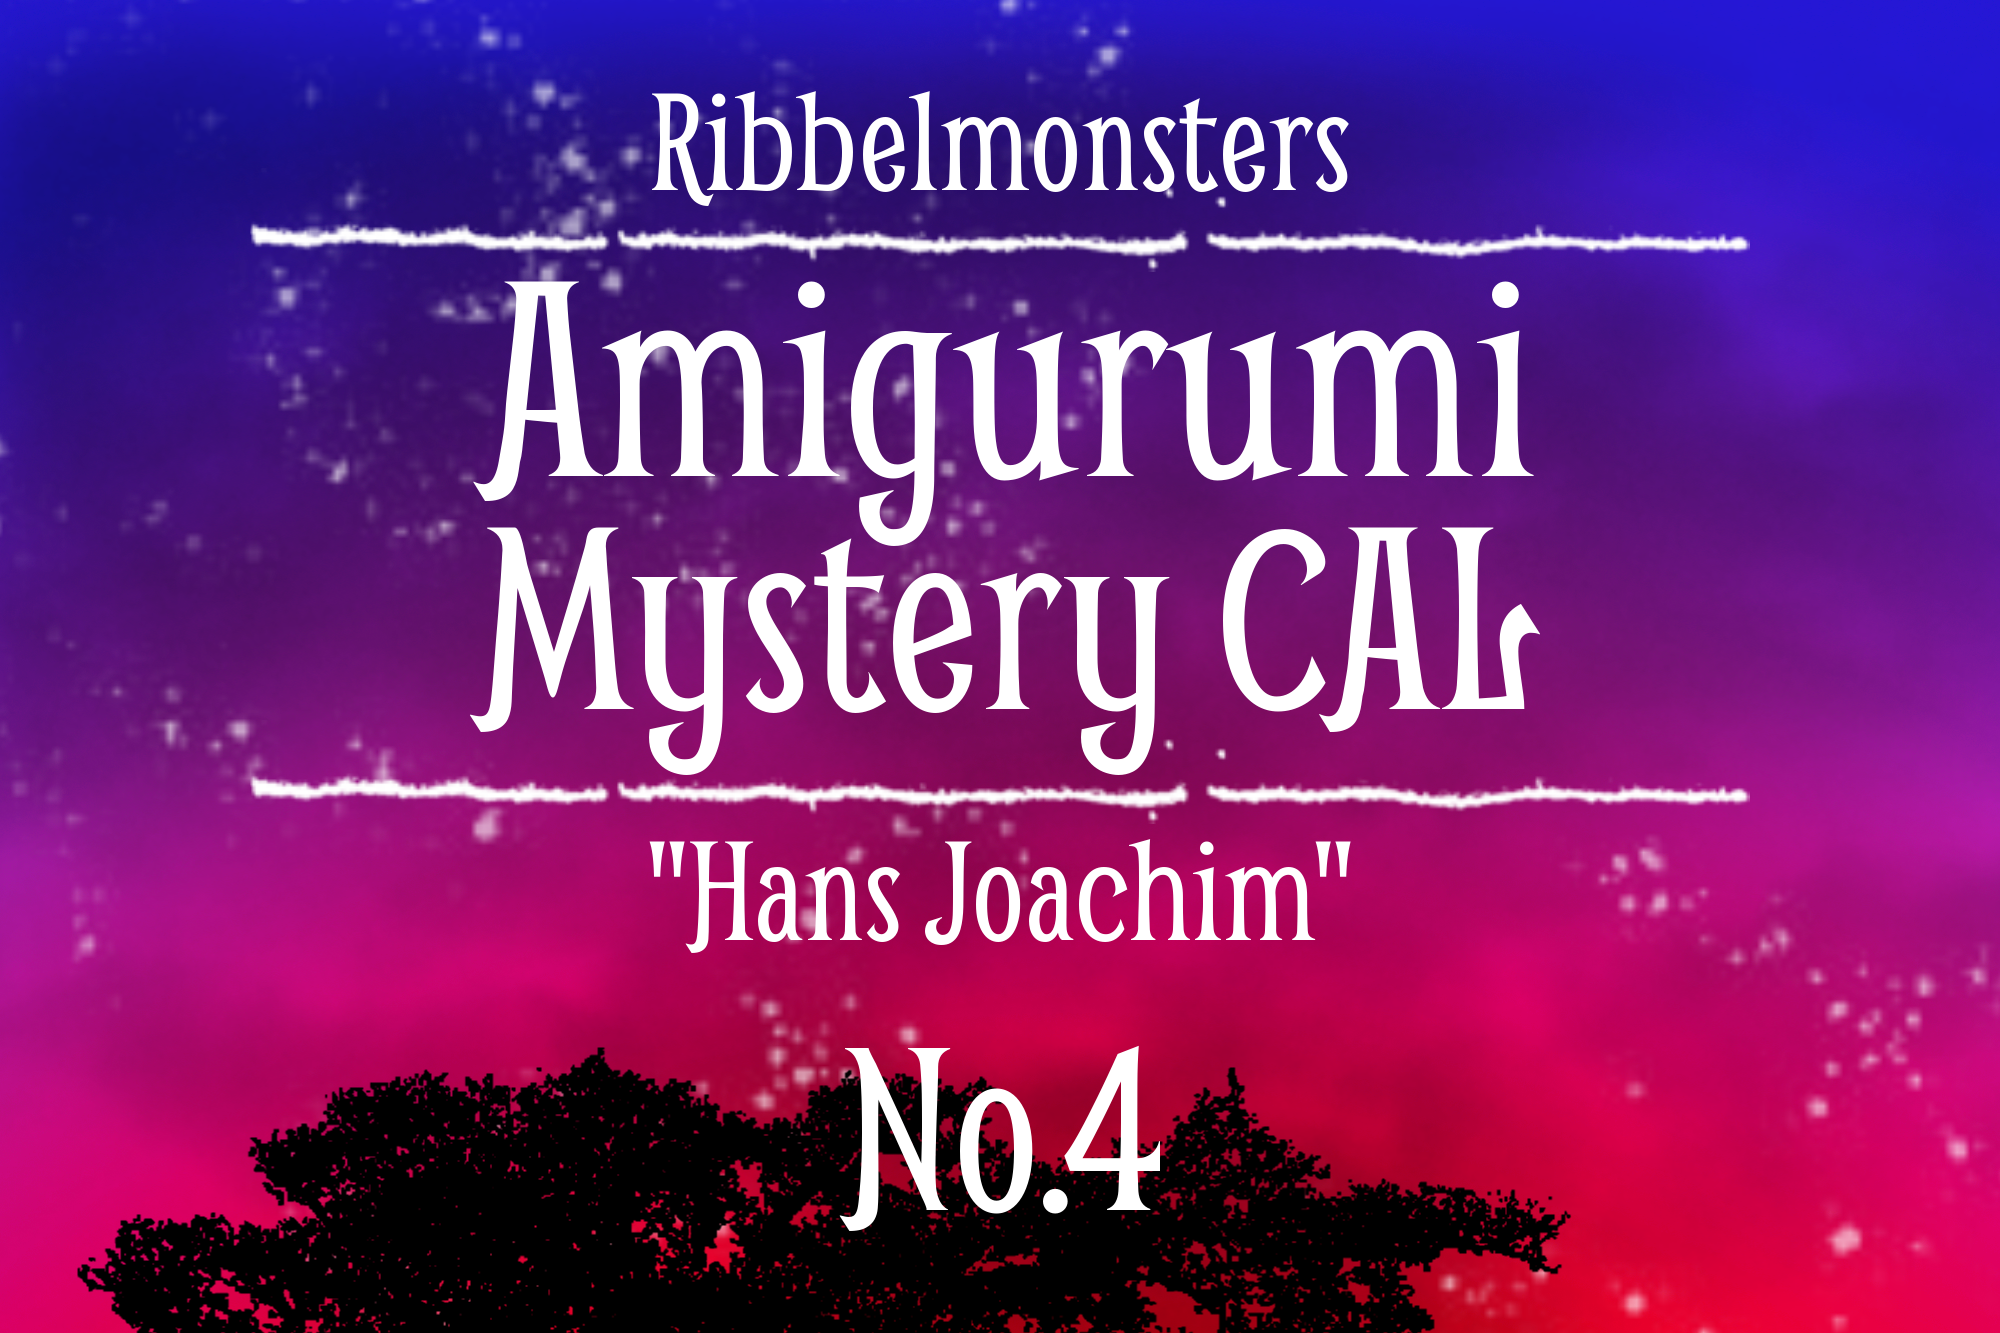 Amigurumi Mystery CAL – “Hans Joachim” – Part 4